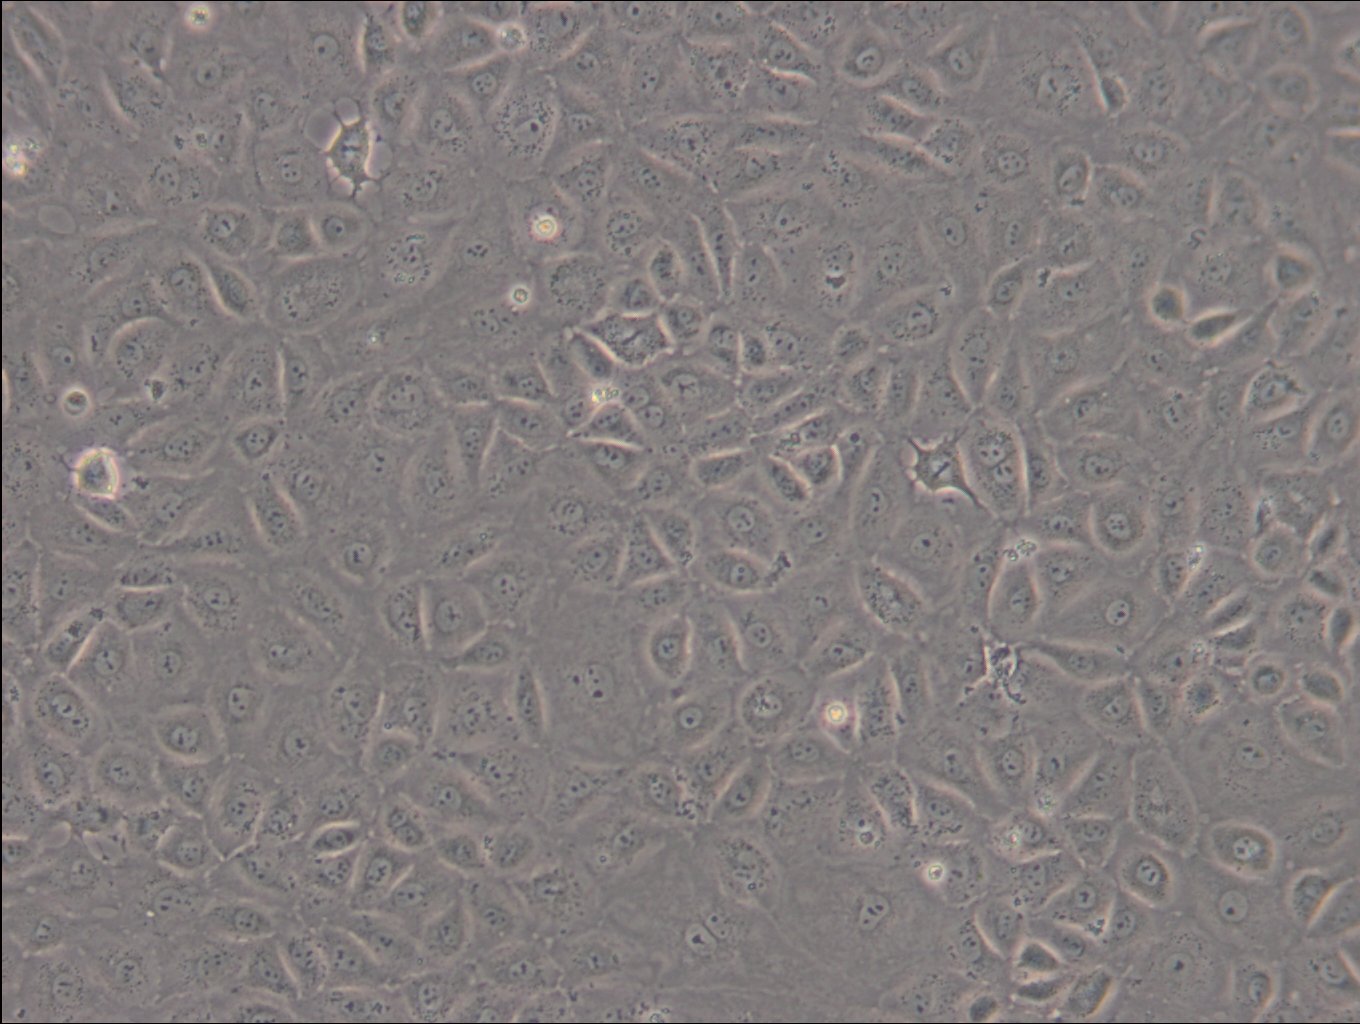 WB-F344 Cells